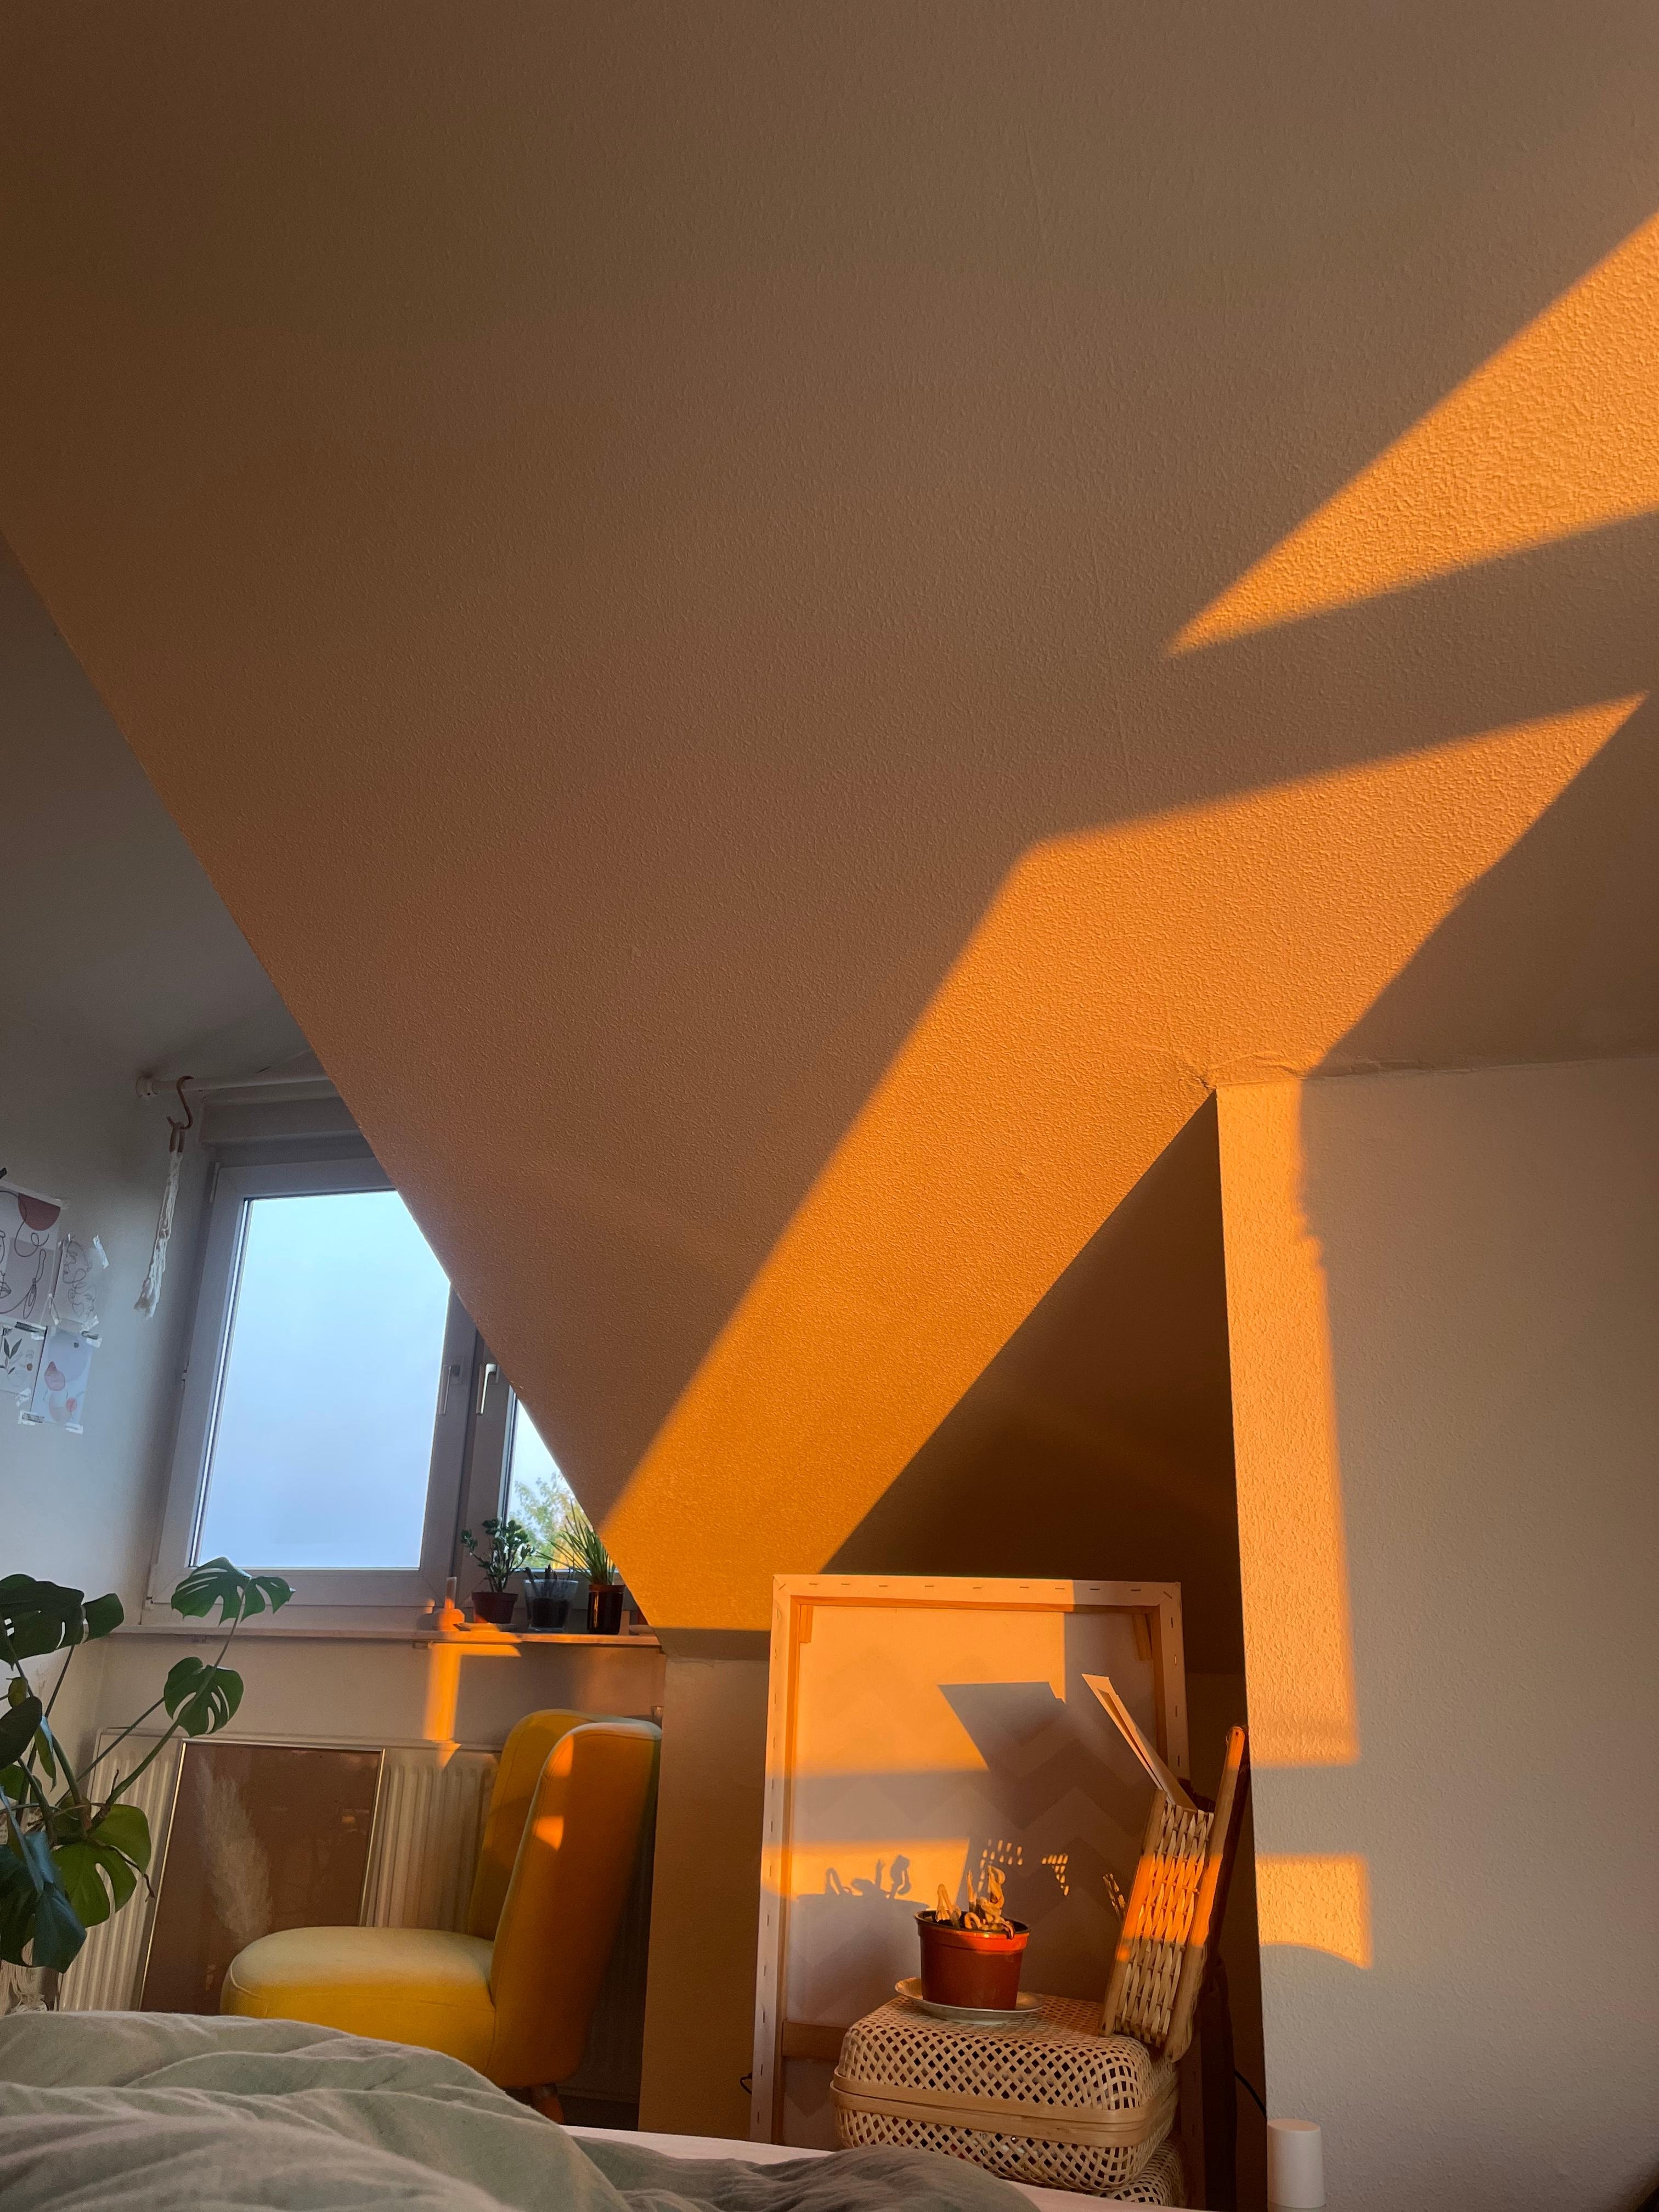 #morningview #lichtspiel #sommerfeeling #natürlichgewecktwerdenvomlicht #dachgeschoss #apartmentlove